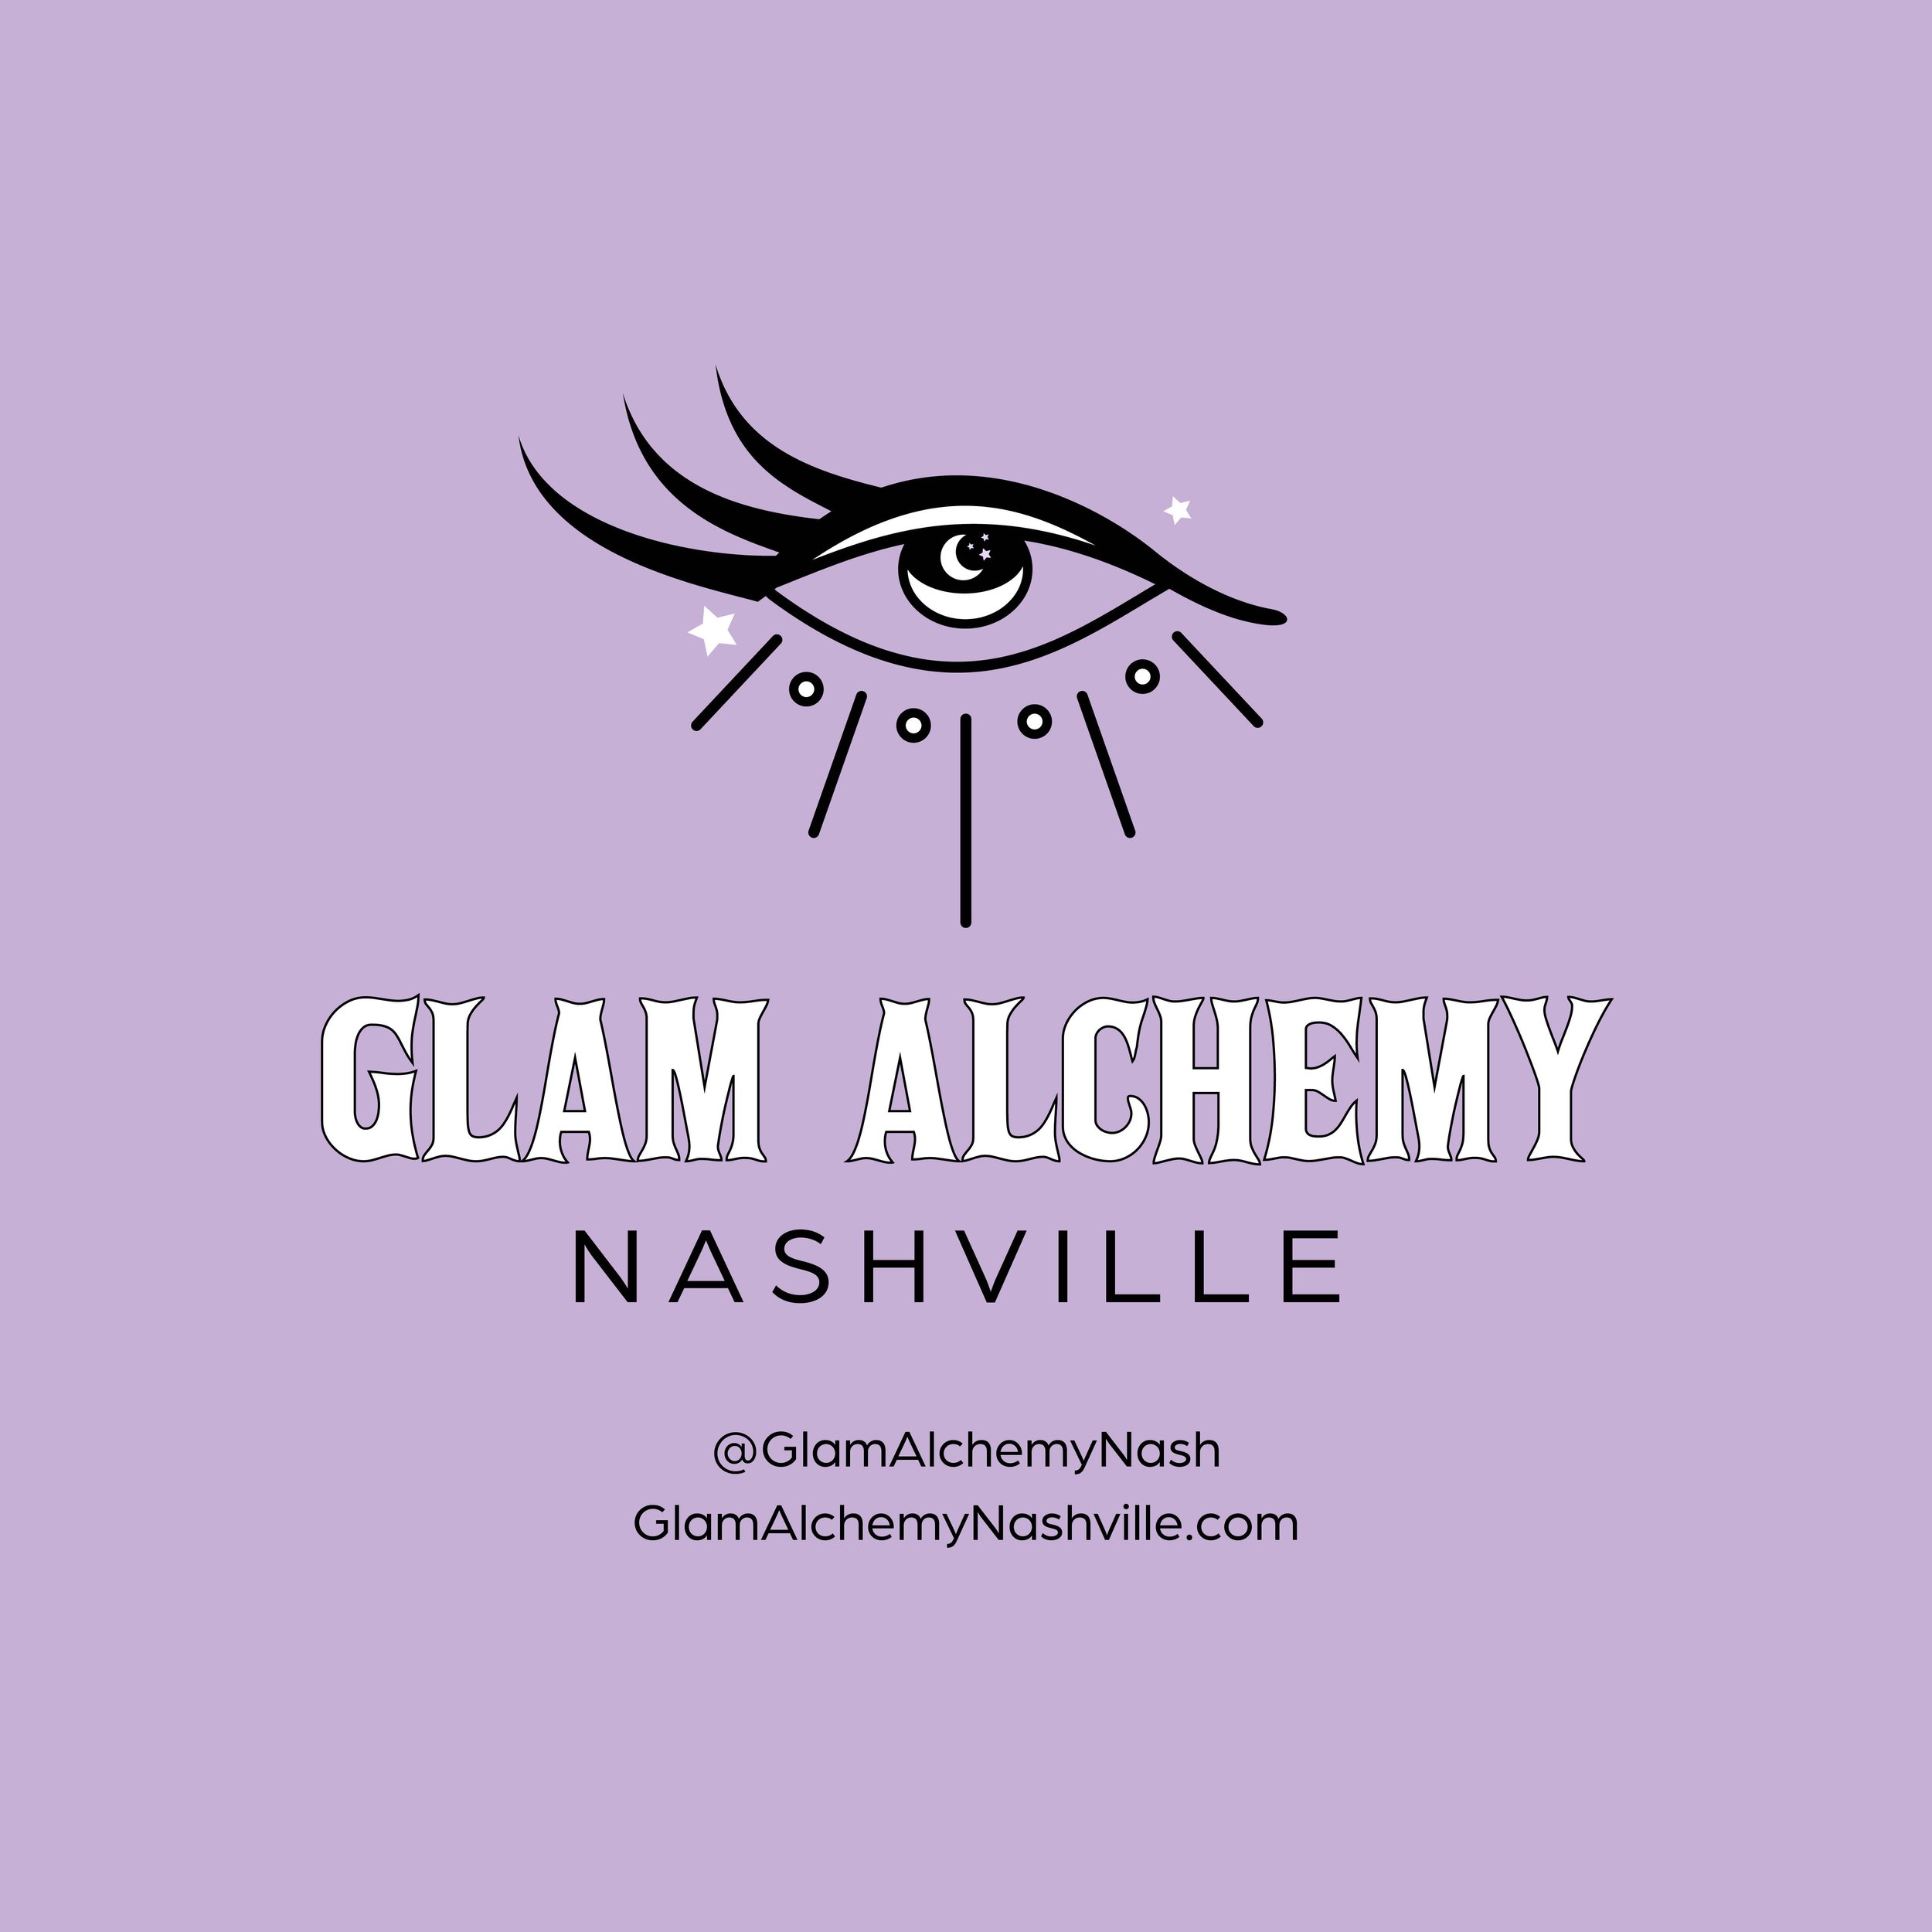 Glam Alchemy Nashville